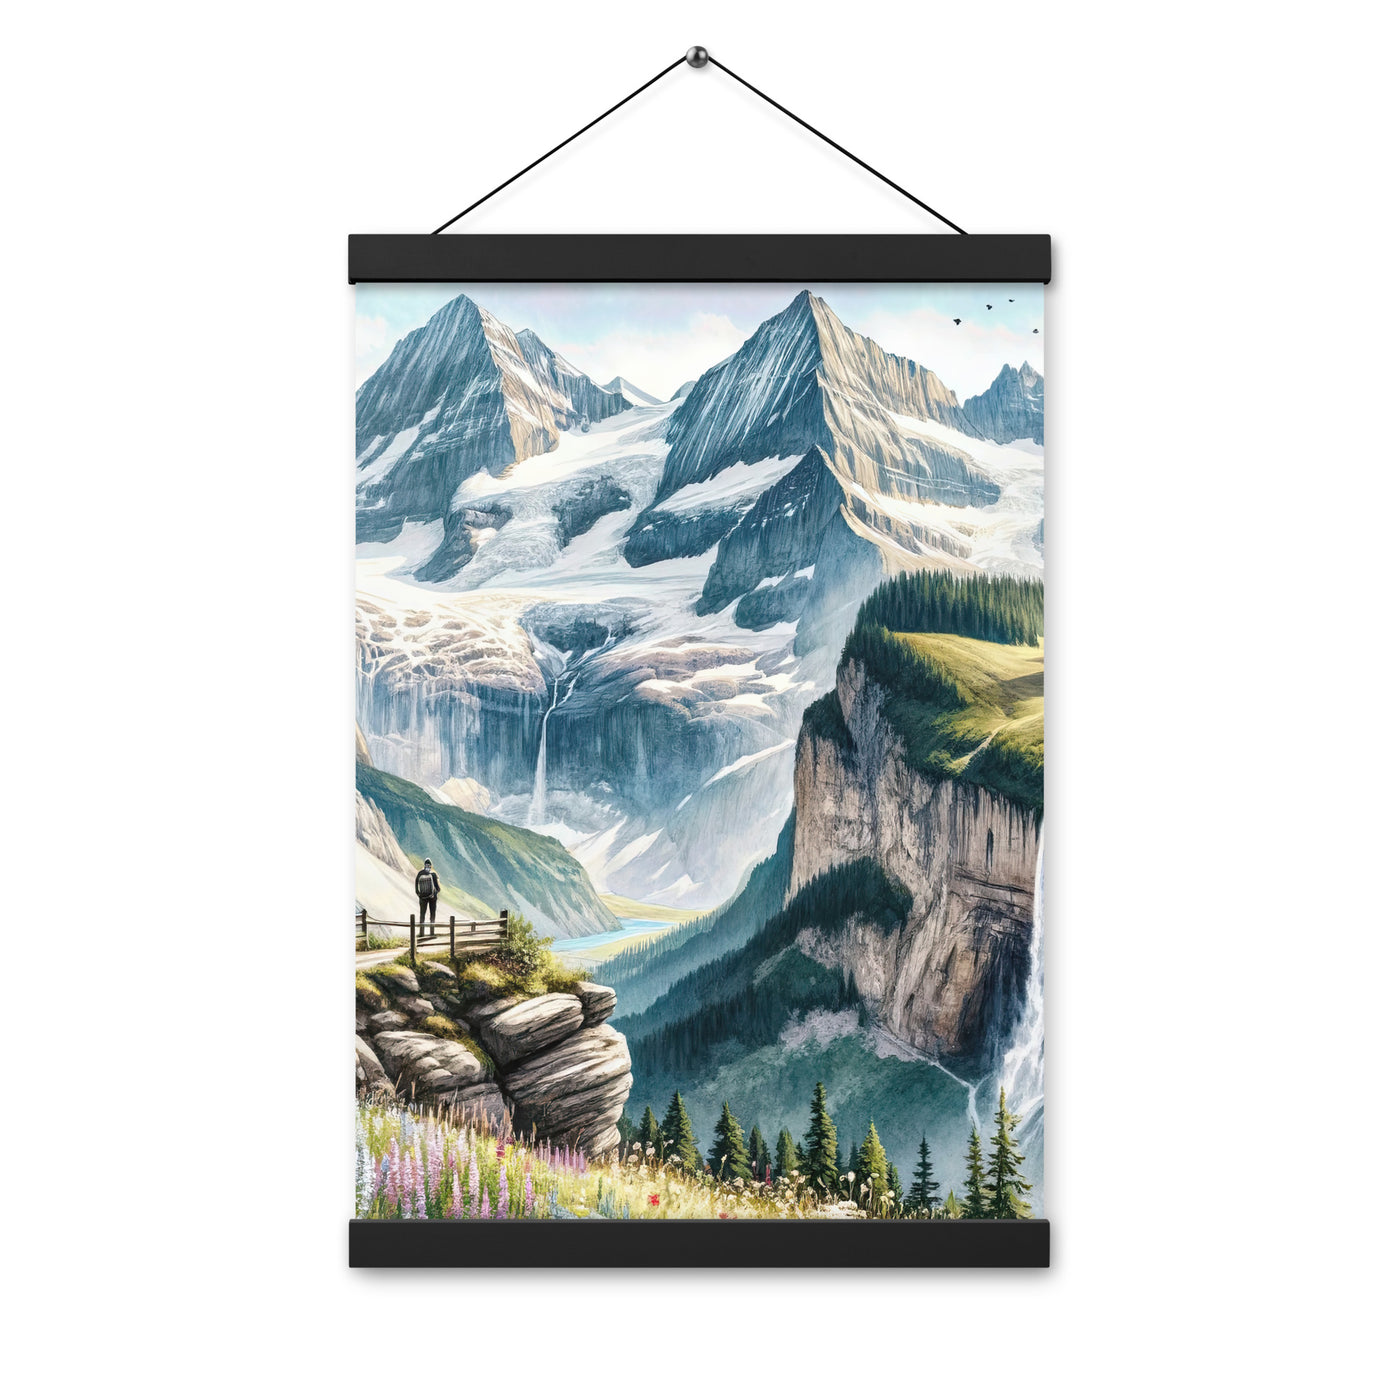 Aquarell-Panoramablick der Alpen mit schneebedeckten Gipfeln, Wasserfällen und Wanderern - Premium Poster mit Aufhängung wandern xxx yyy zzz 30.5 x 45.7 cm